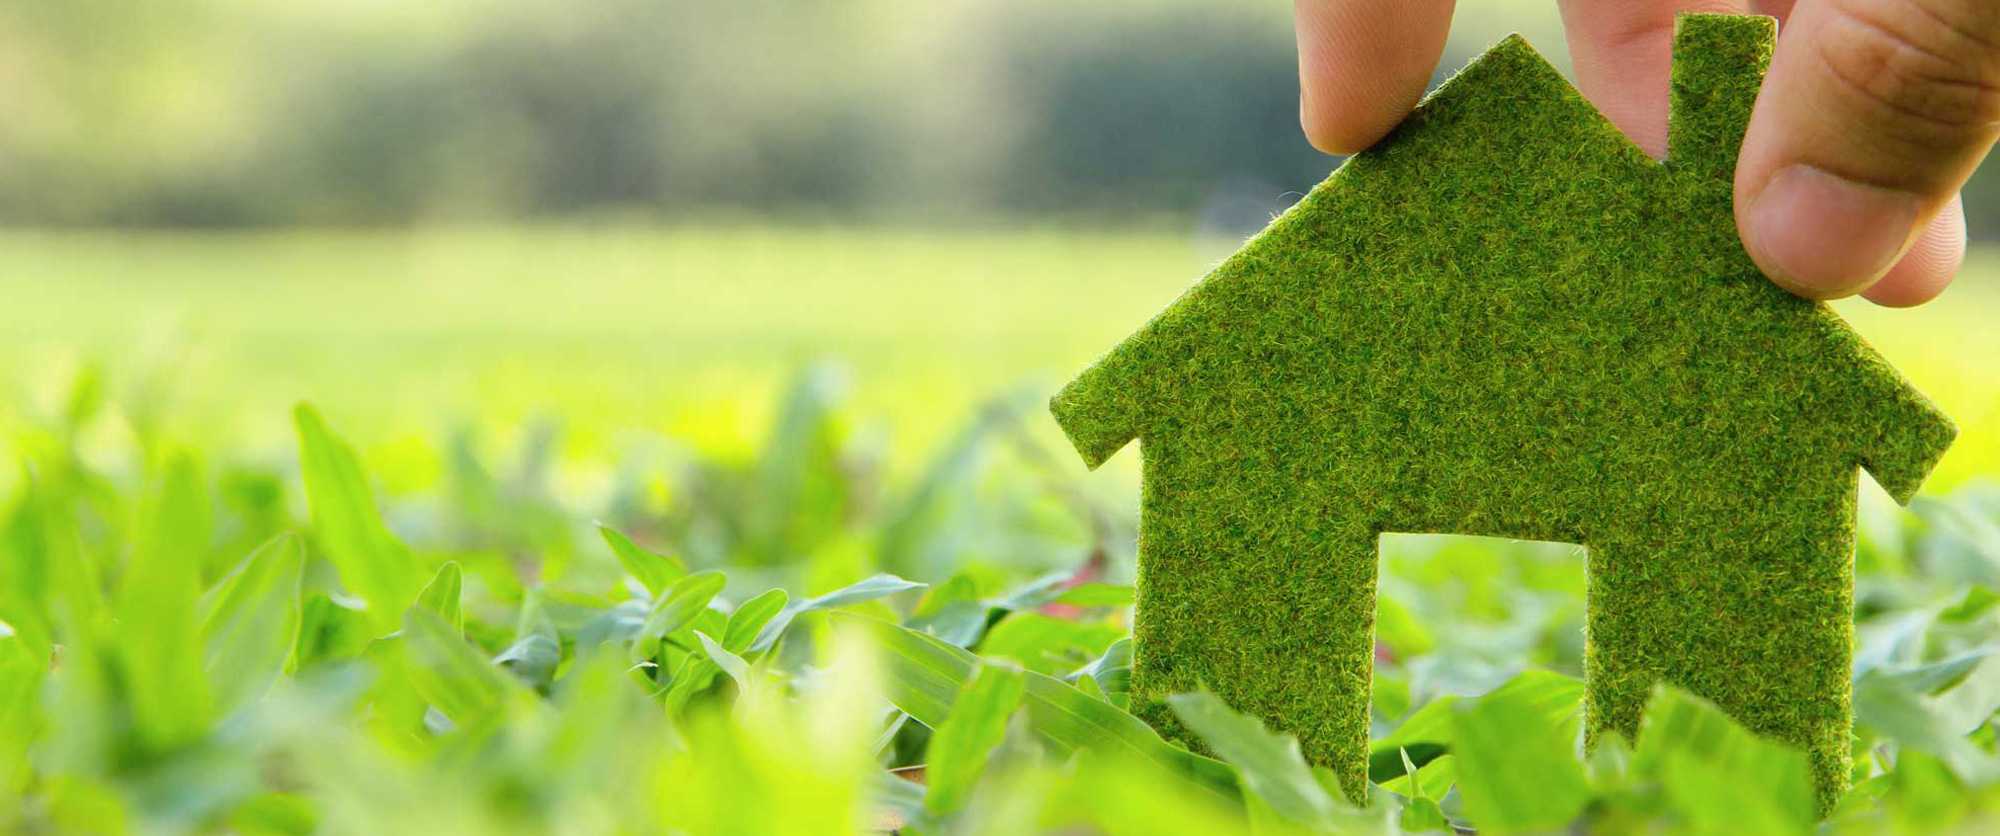 6 способов сделать дом более экологичным | brodude.ru